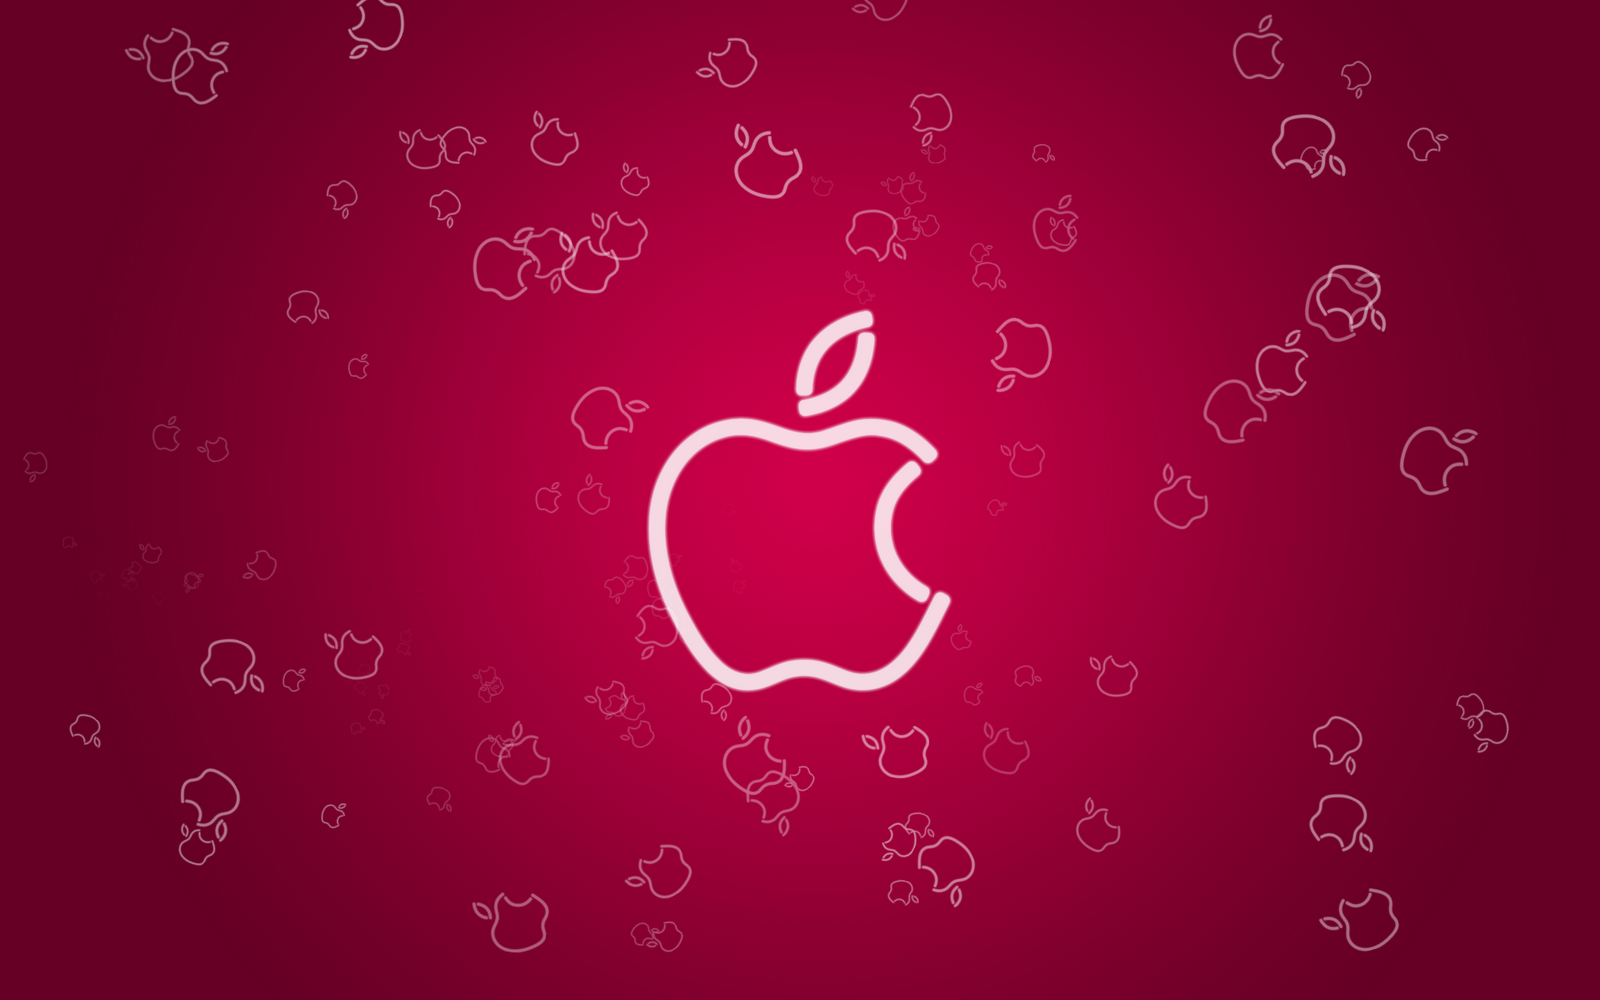 Description Red Apple Wallpaper is a hi res Wallpaper for pc desktops